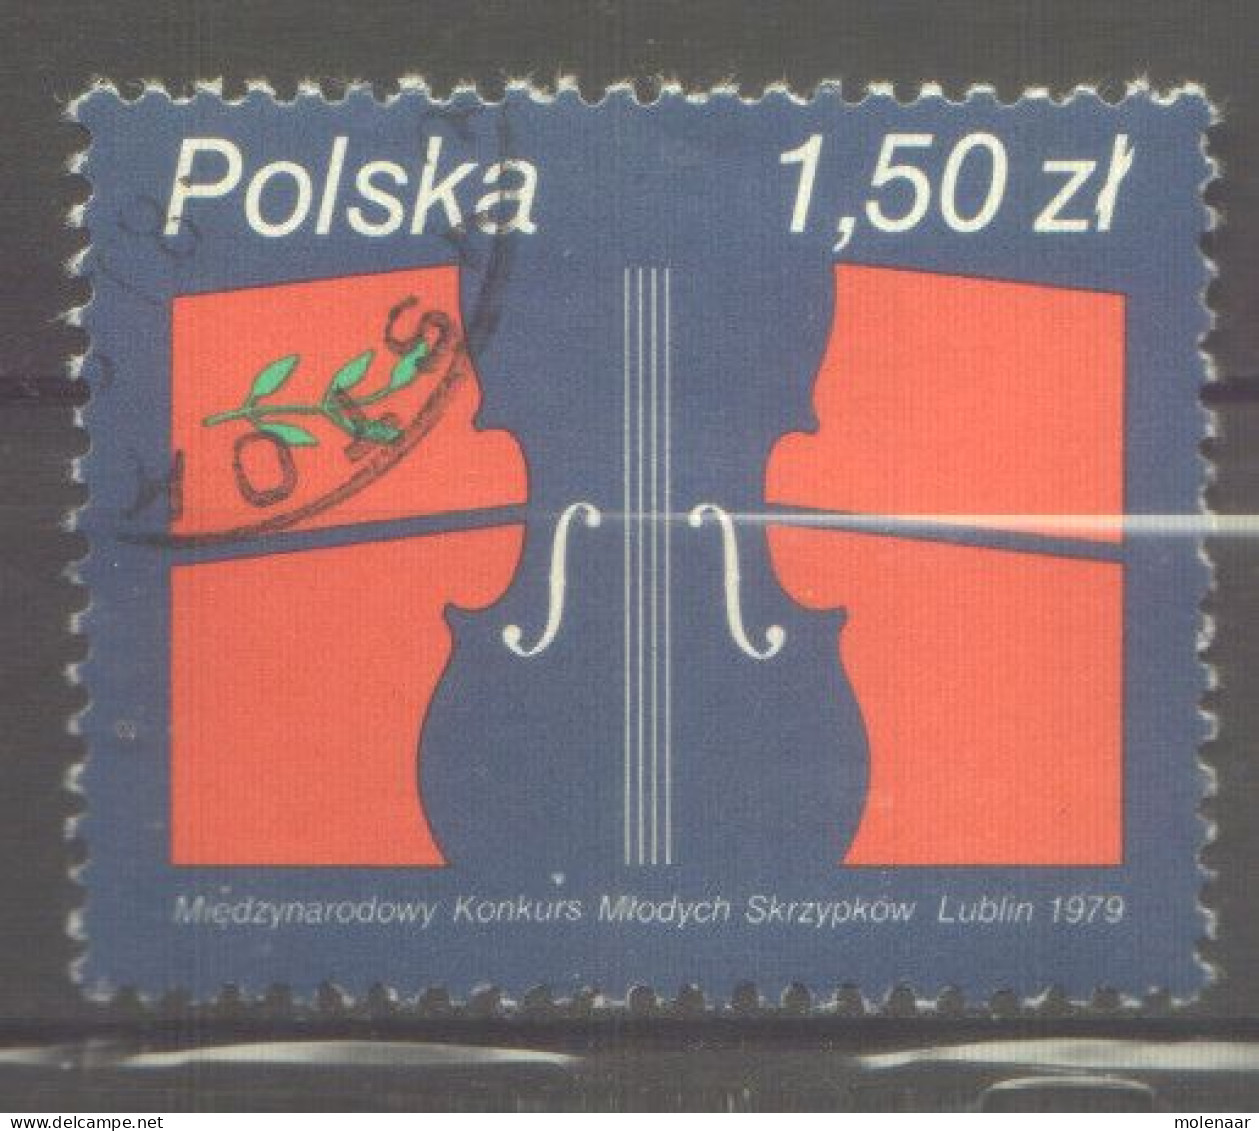 Postzegels > Europa > Polen > 1944-.... Republiek > 1971-80 > Gebruikt  2643 (12174) - Oblitérés